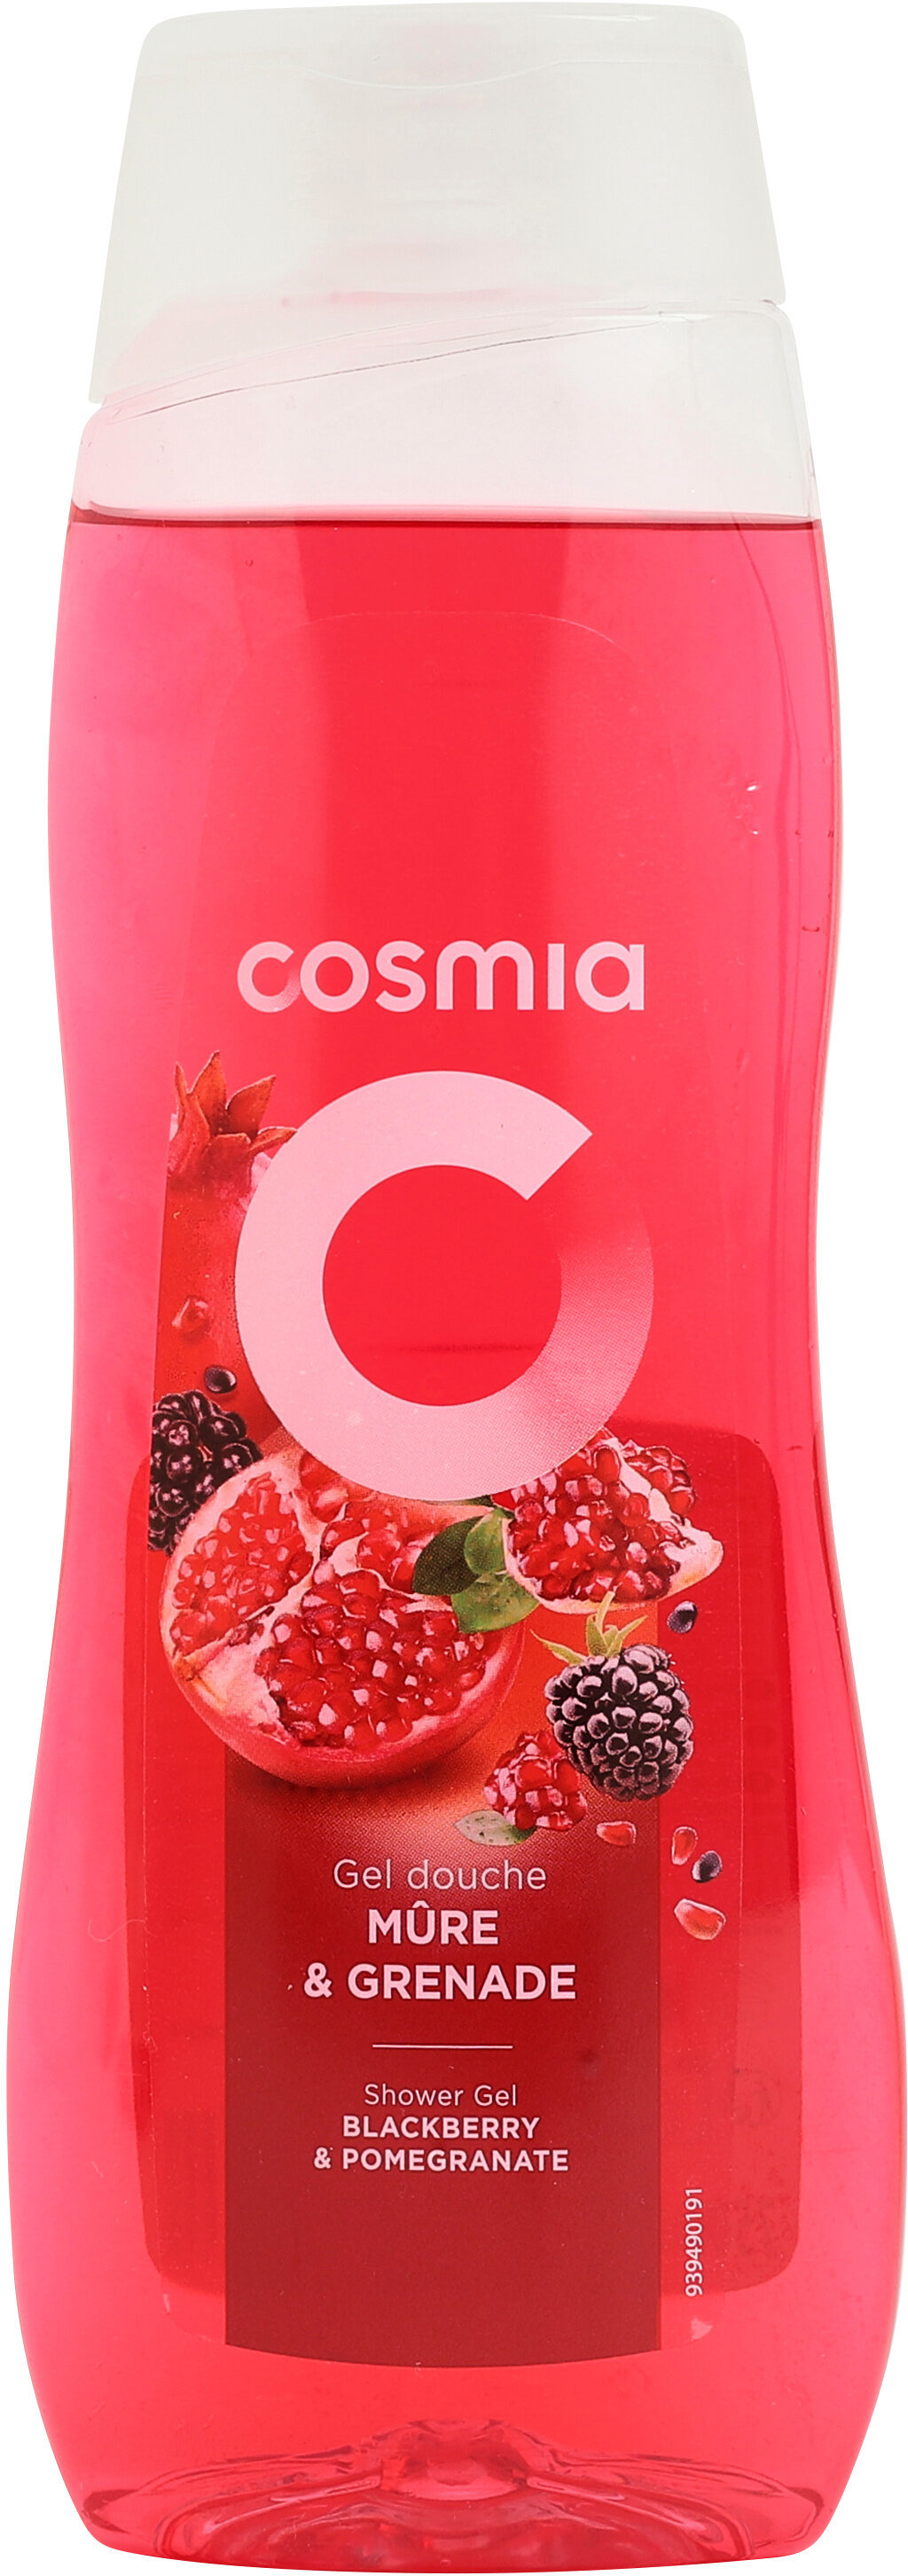 Cosmia shower gel blackberry pomegranate 750 ml - Produit - fr